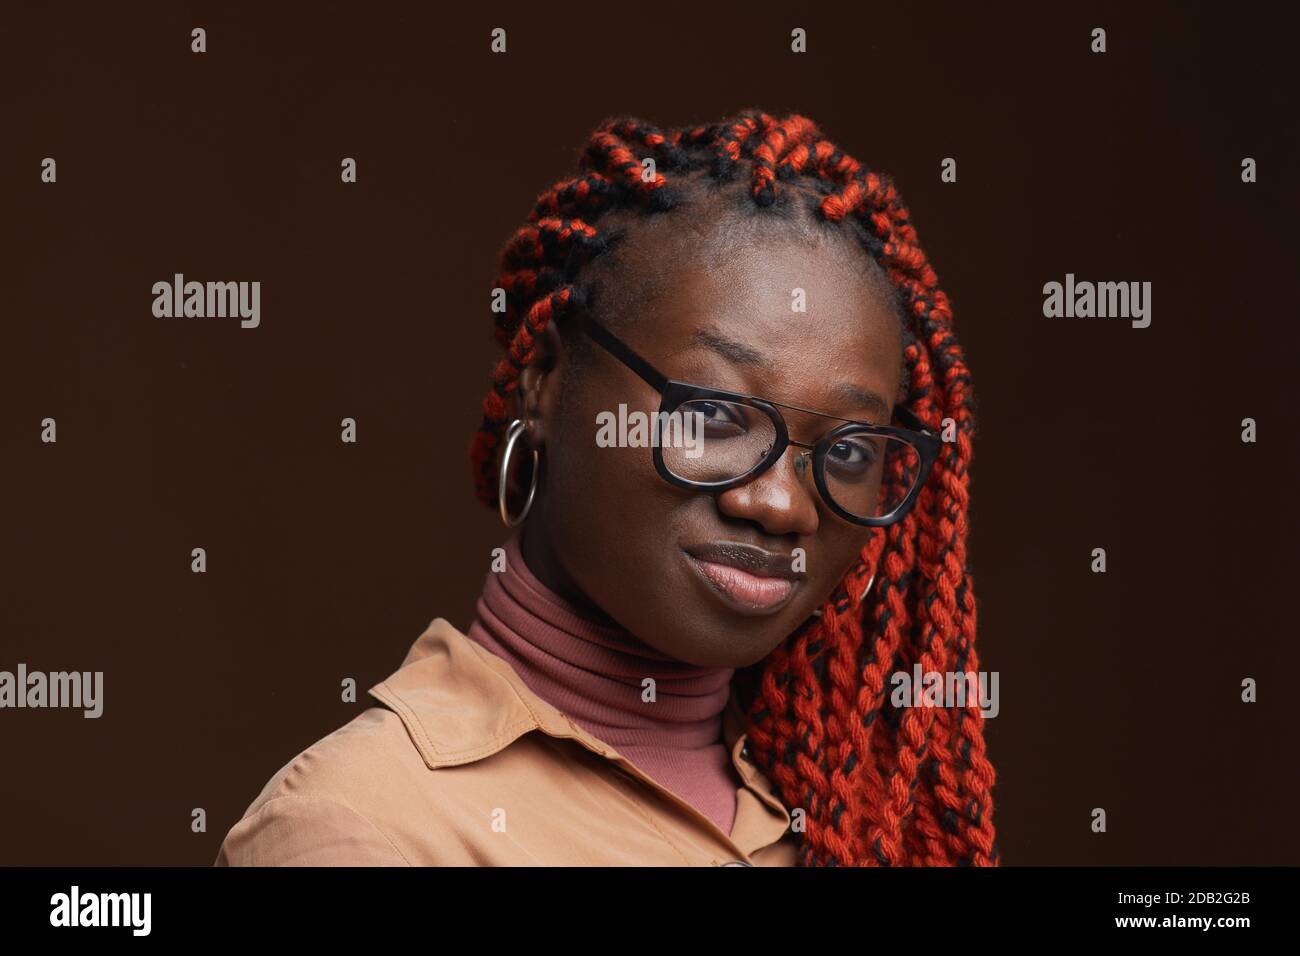 Nahaufnahme Porträt der zeitgenössischen afroamerikanischen Frau mit geflochtenen Haaren Blick auf die Kamera, während posiert vor dunkelbraunem Hintergrund im Studio, Copy Space Stockfoto